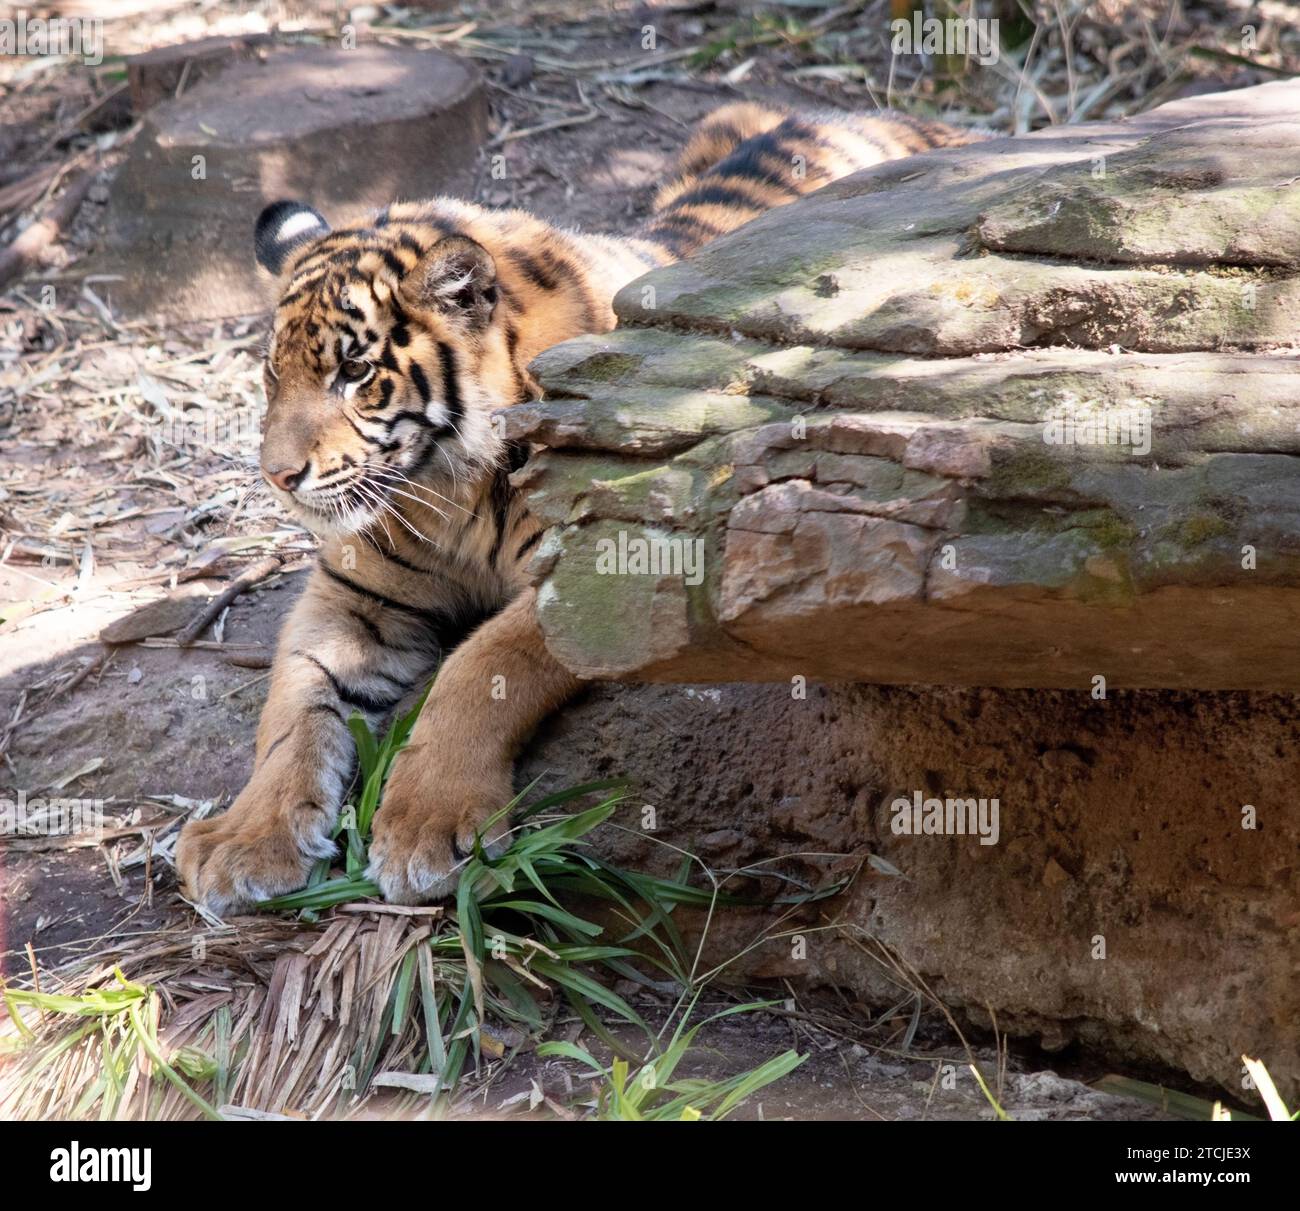 Junge Tiger haben alle ihre Streifen und Markierungen. Sie lernen, während sie spielen, mächtige Jäger zu sein Stockfoto